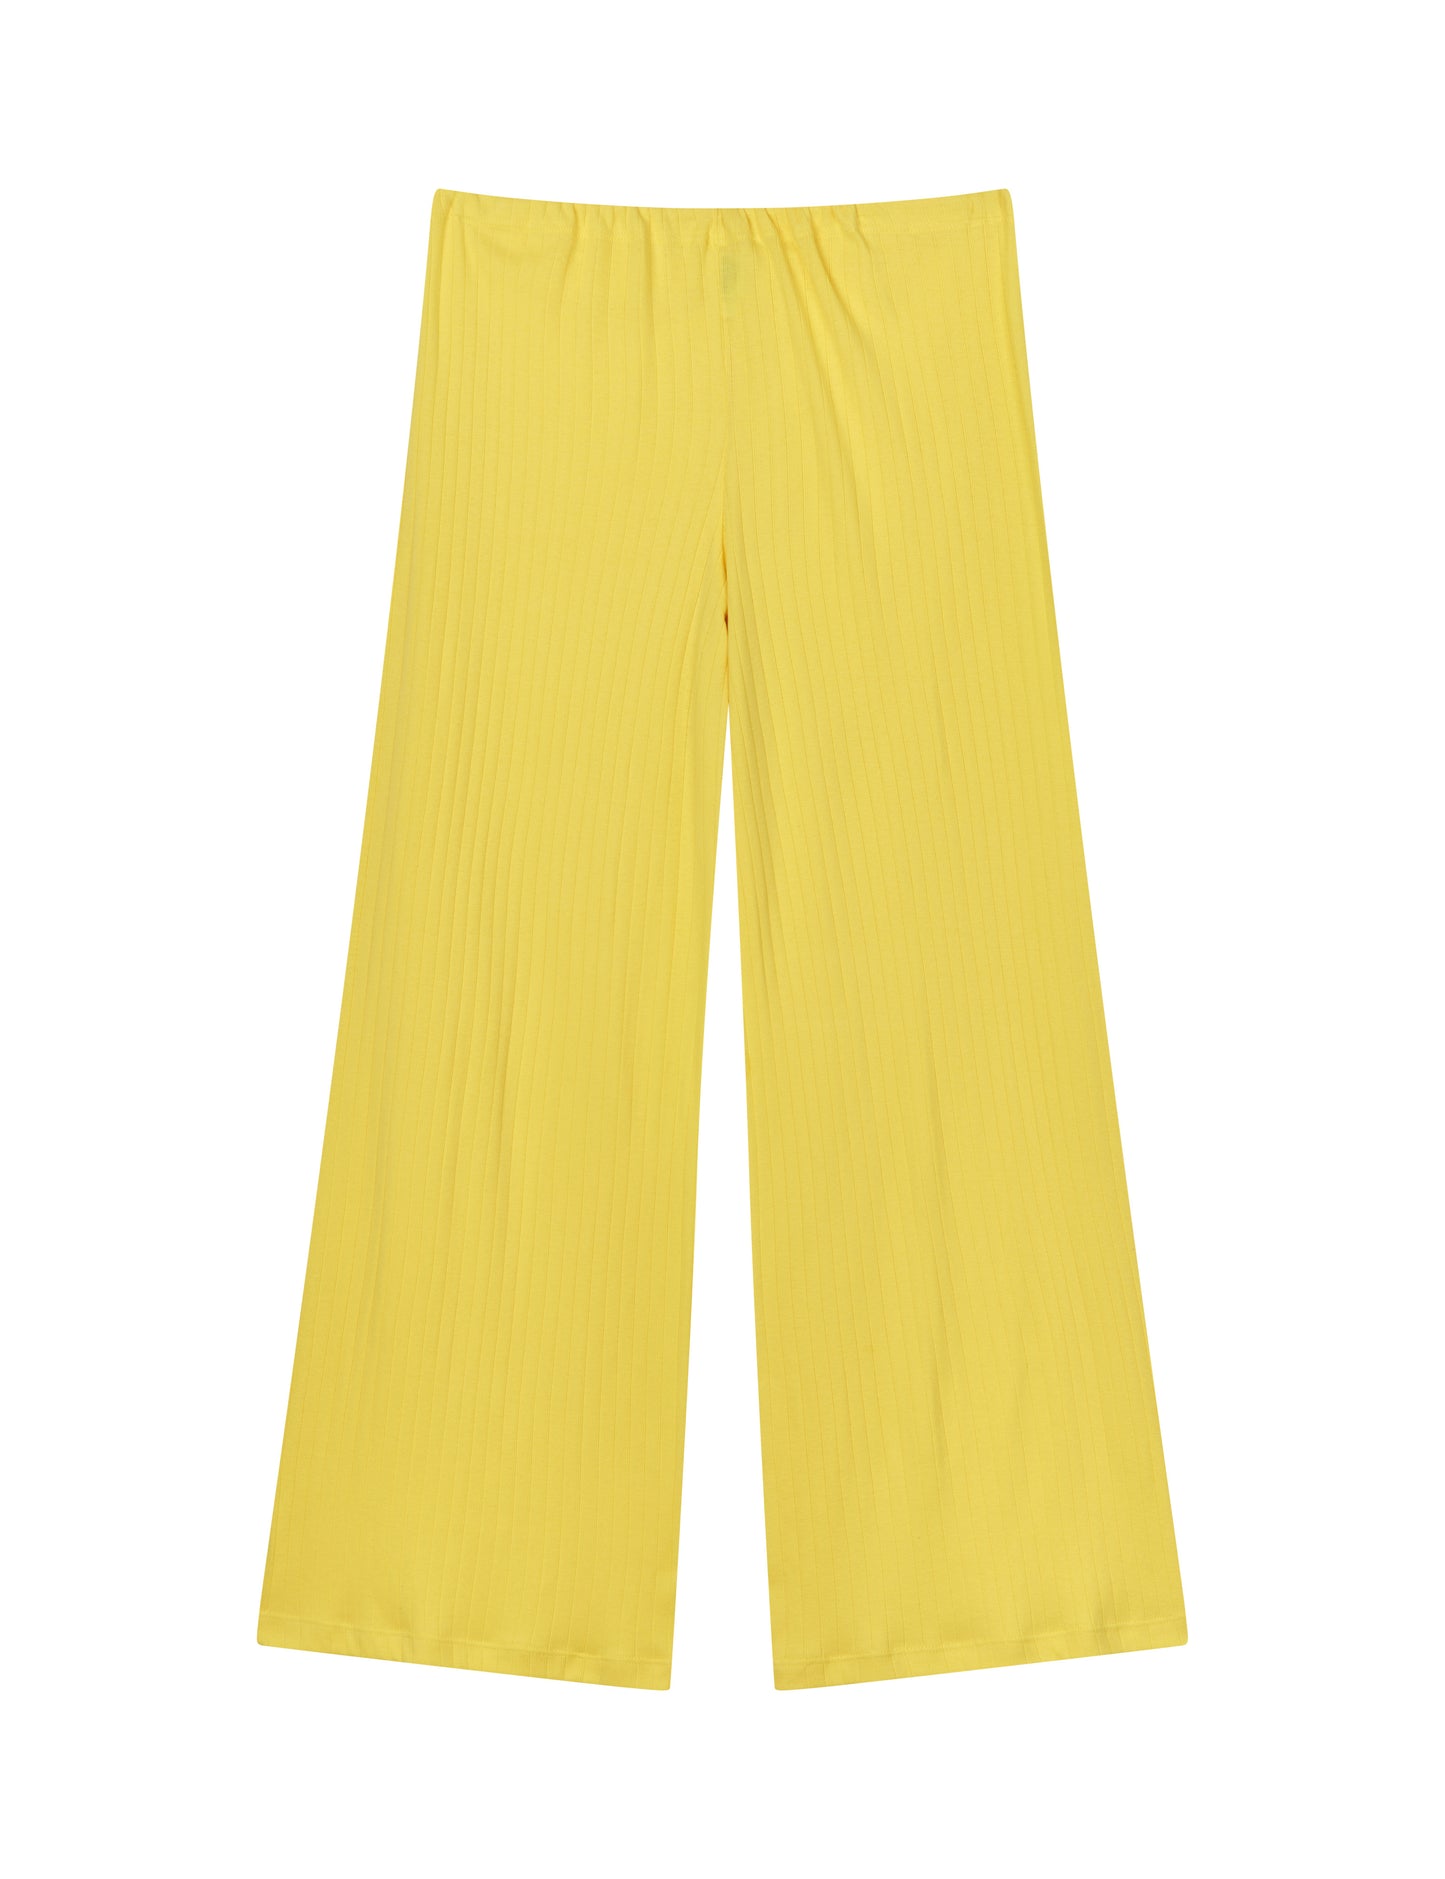 NPS Nova Pants Solid Colour, Lemon